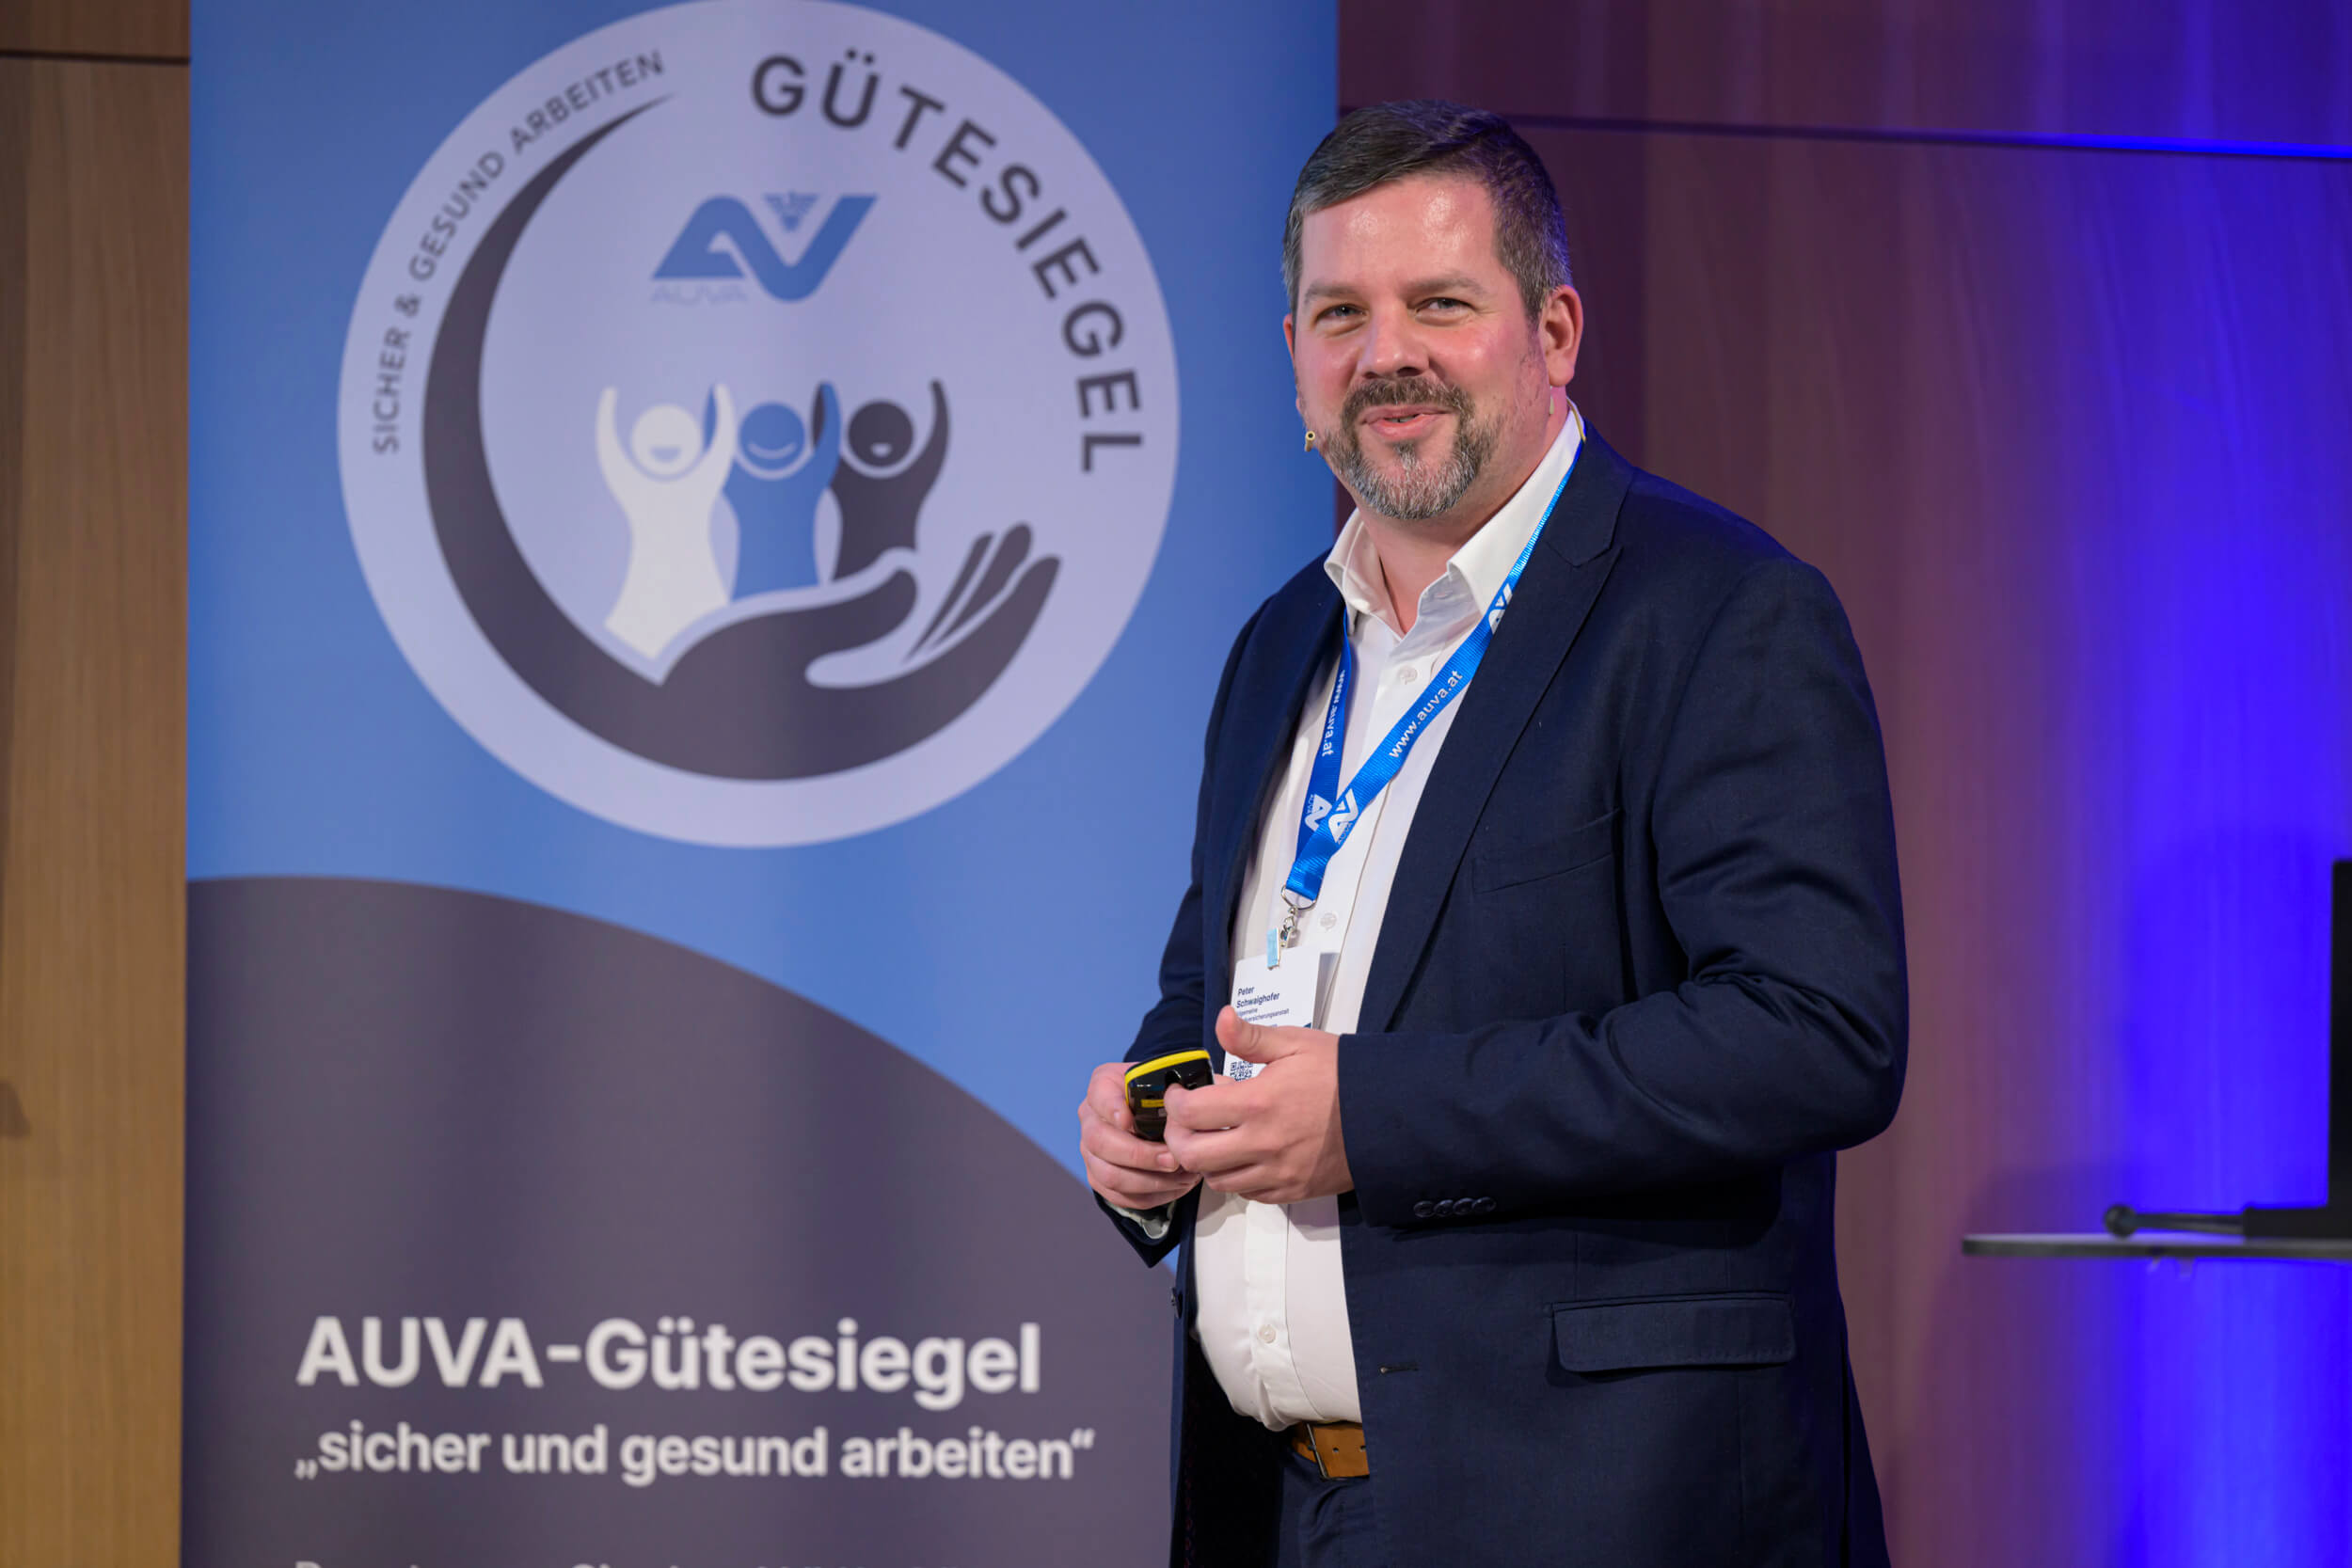 AUVA-Gütesiegelverleihung 2023: AUVA-Verkehrssicherheitsexperte Peter Schwaighofer beim Vortrag